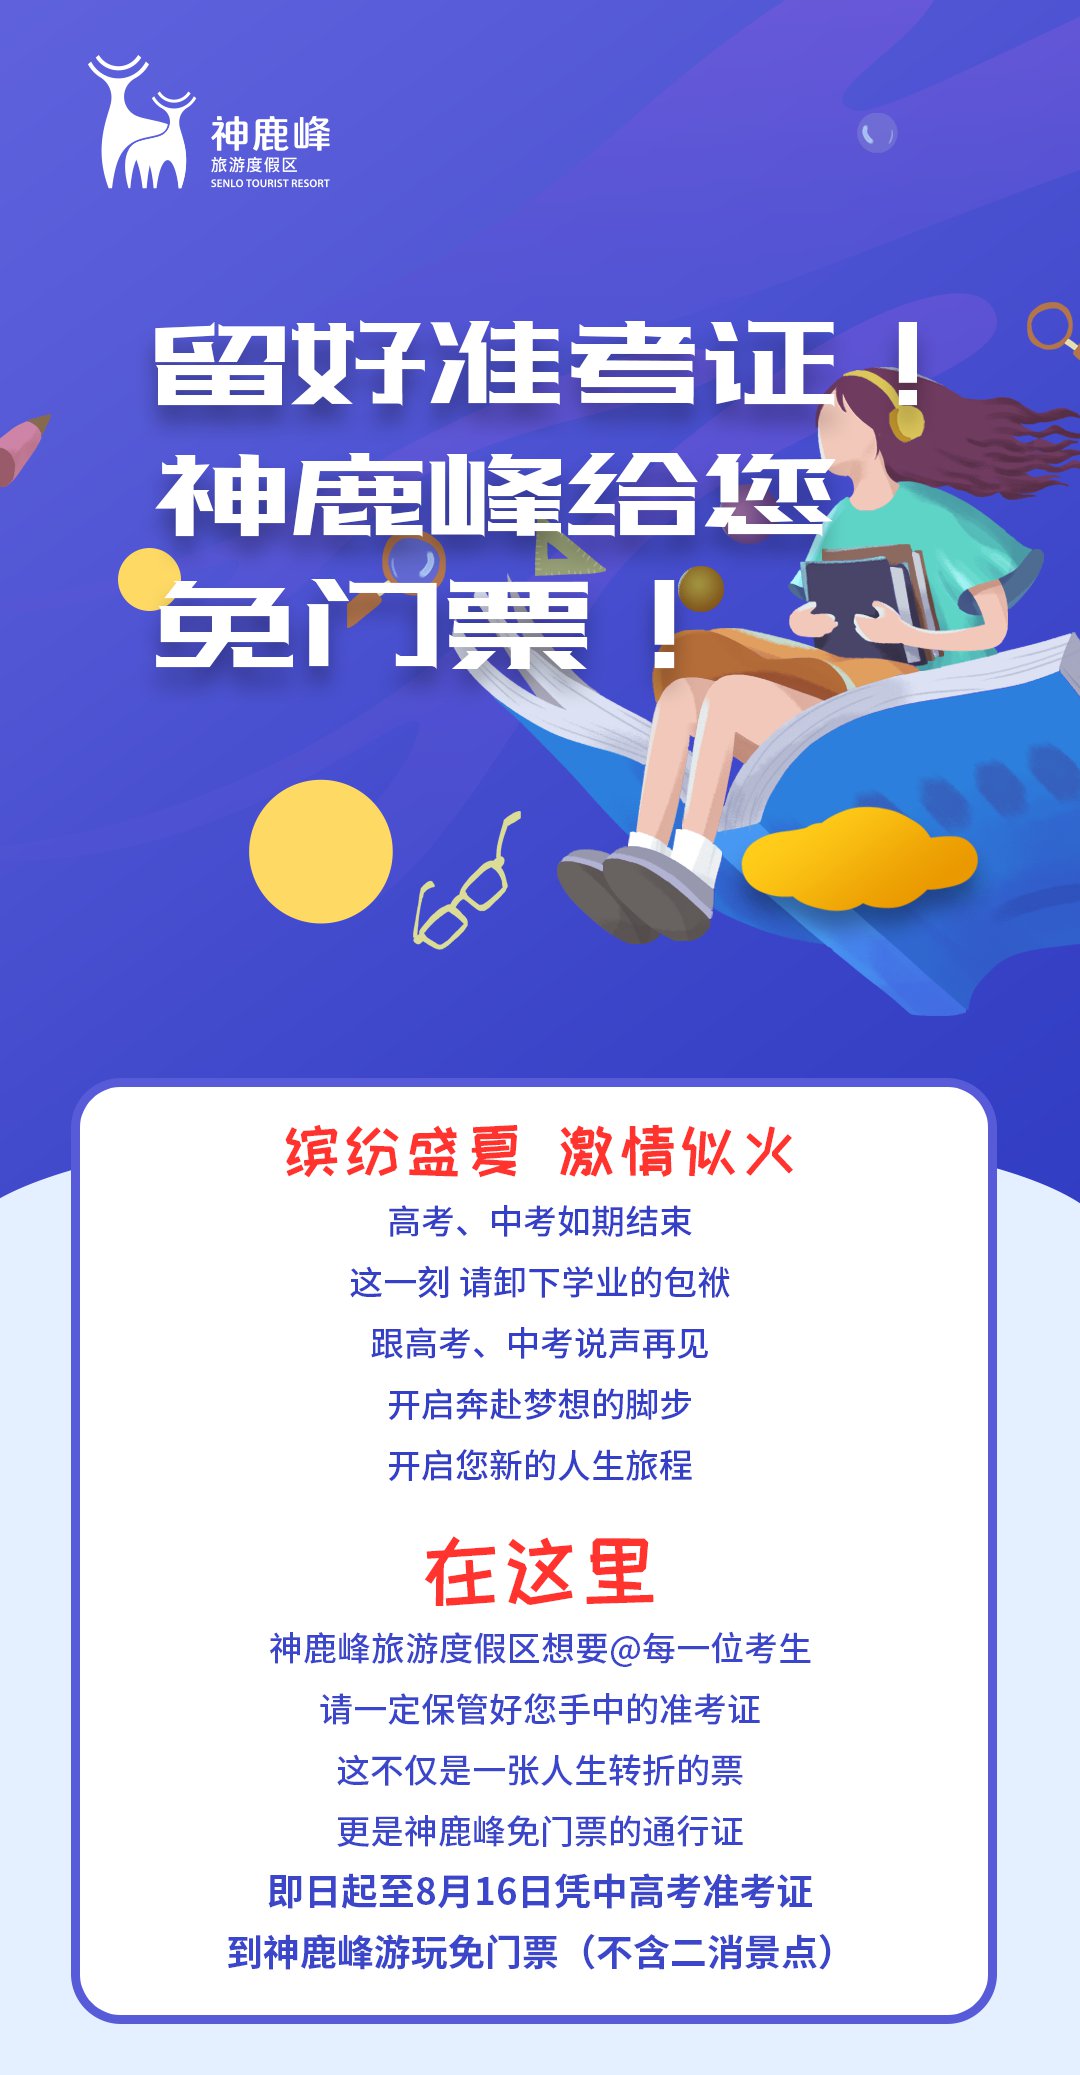 2020神鹿峰旅游度假区暑假活动